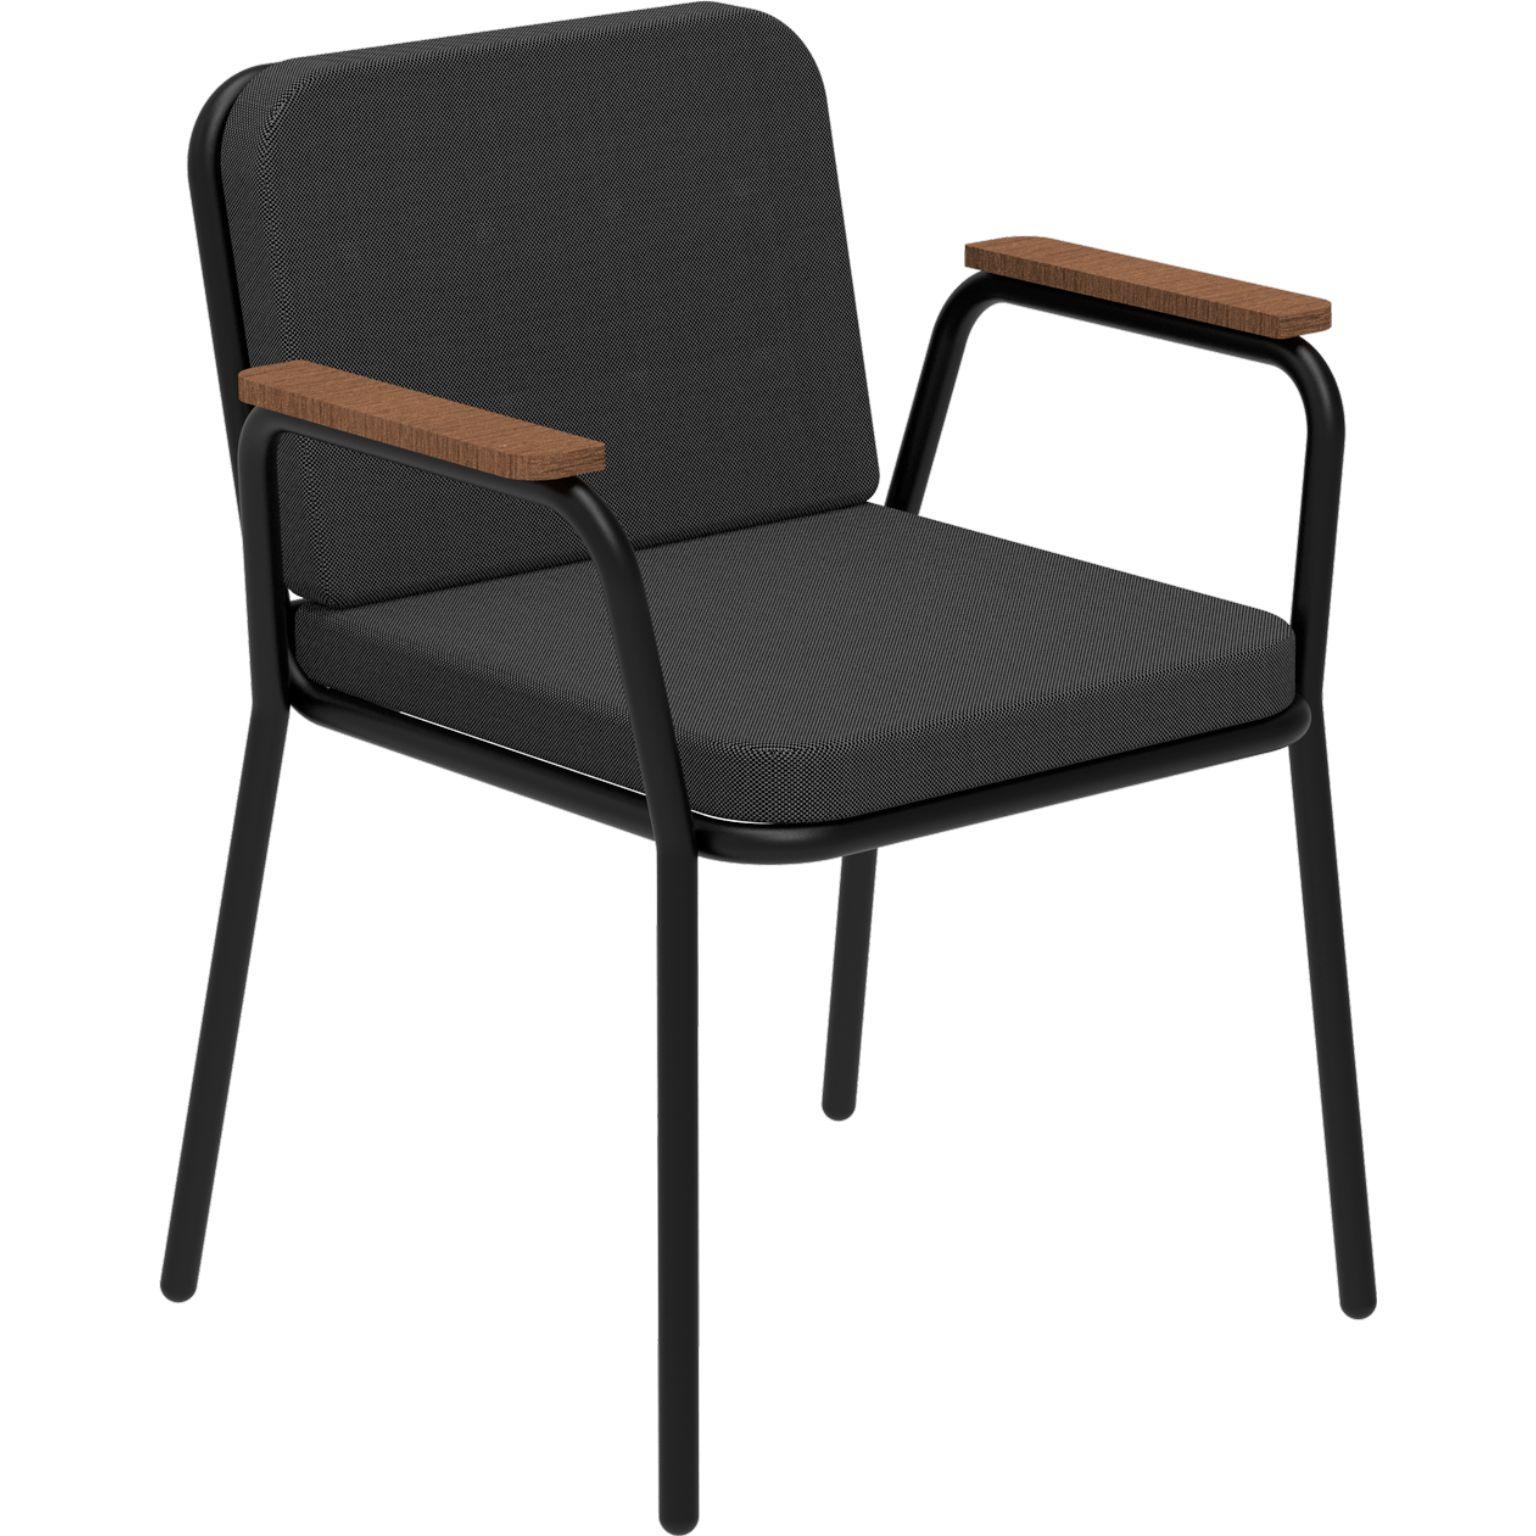 Nature Schwarzer Sessel von MOWEE
Abmessungen: T60 x B67 x H83 cm (Sitzhöhe 42 cm).
MATERIAL: Aluminium, Polsterung und Iroko-Holz.
Gewicht: 5 kg.
Auch in verschiedenen Farben und Ausführungen erhältlich. Bitte kontaktieren Sie uns.

Eine